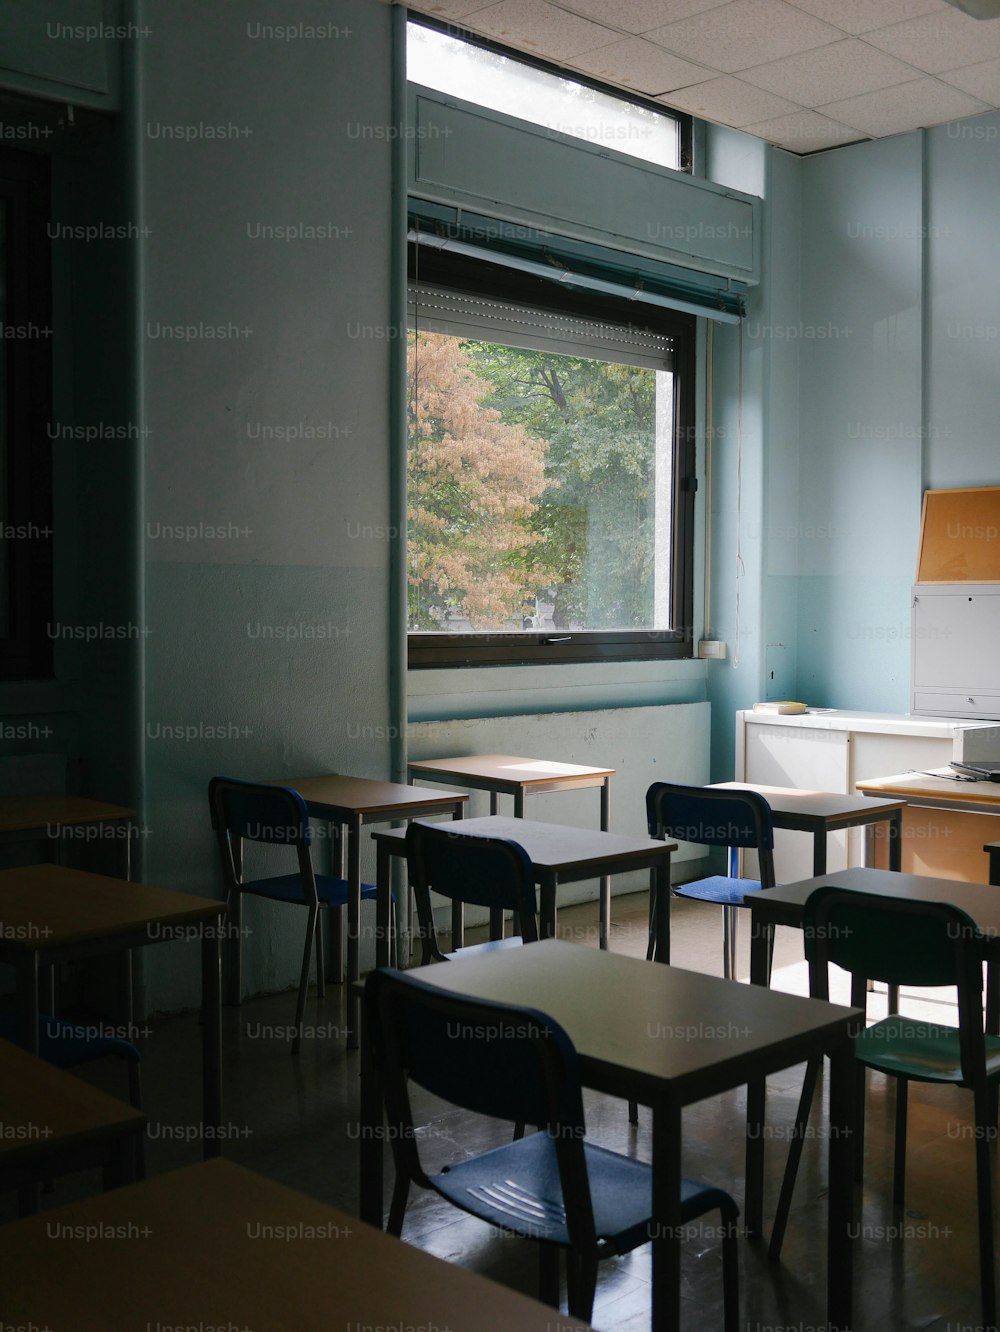 Une salle de classe vide avec des bureaux et des chaises